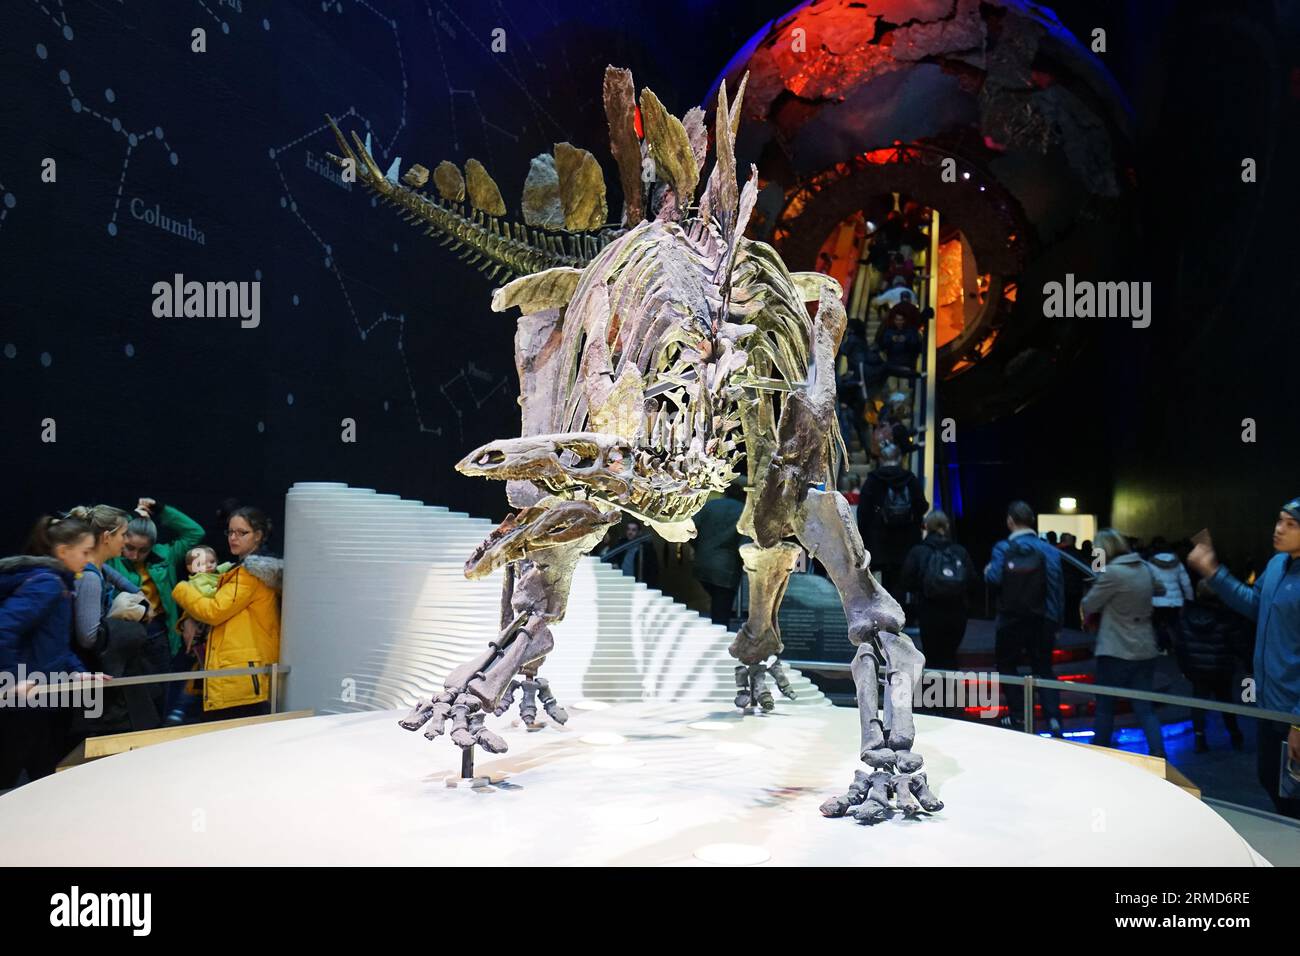 Details und Design des Stegosaurus Dinosaurier Skeletts namens Sophie im Naturhistorischen Museum, dem Zentrum der Exzellenz Sammlungen in der Taxonomie - Großbritannien Stockfoto